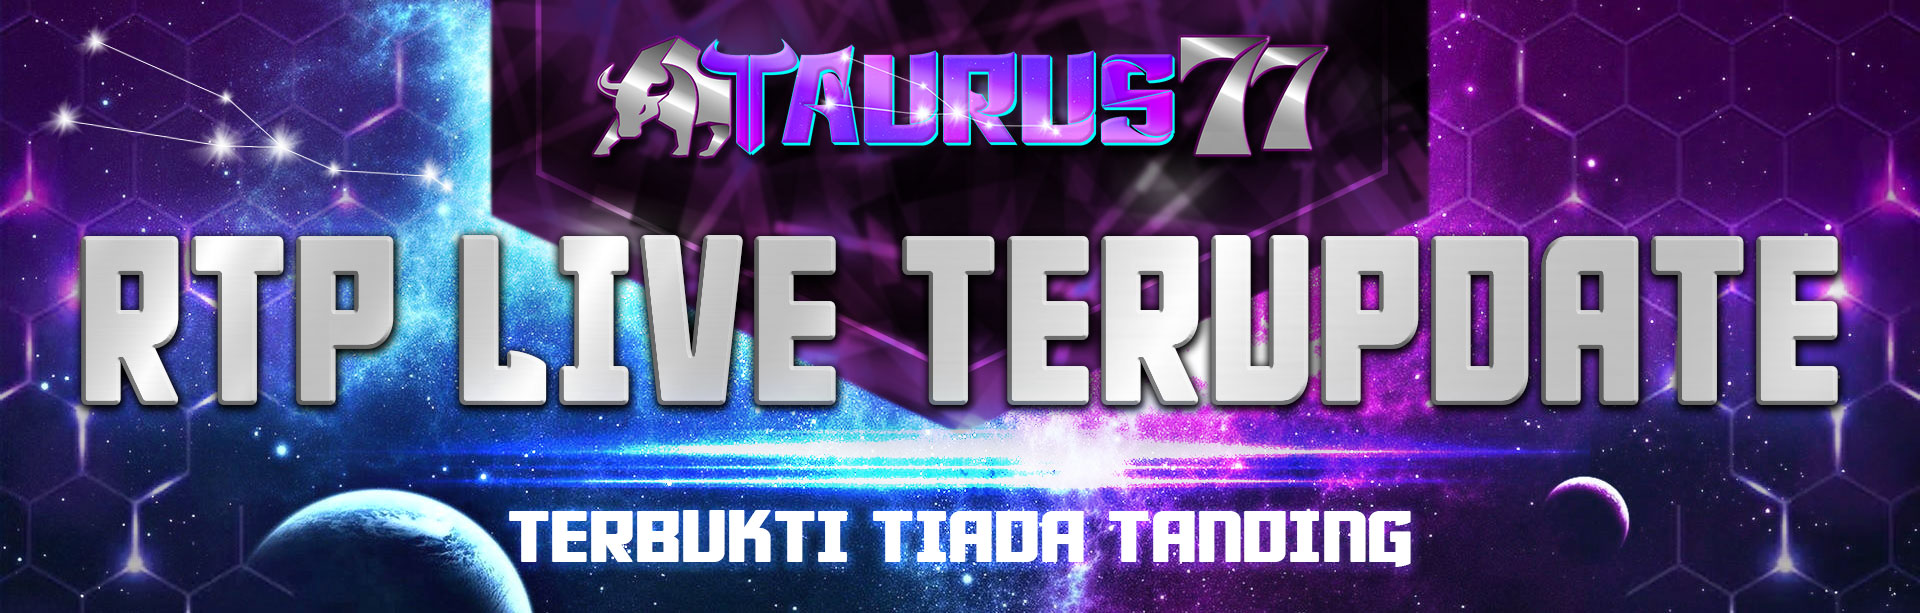 RTP TAURUS77